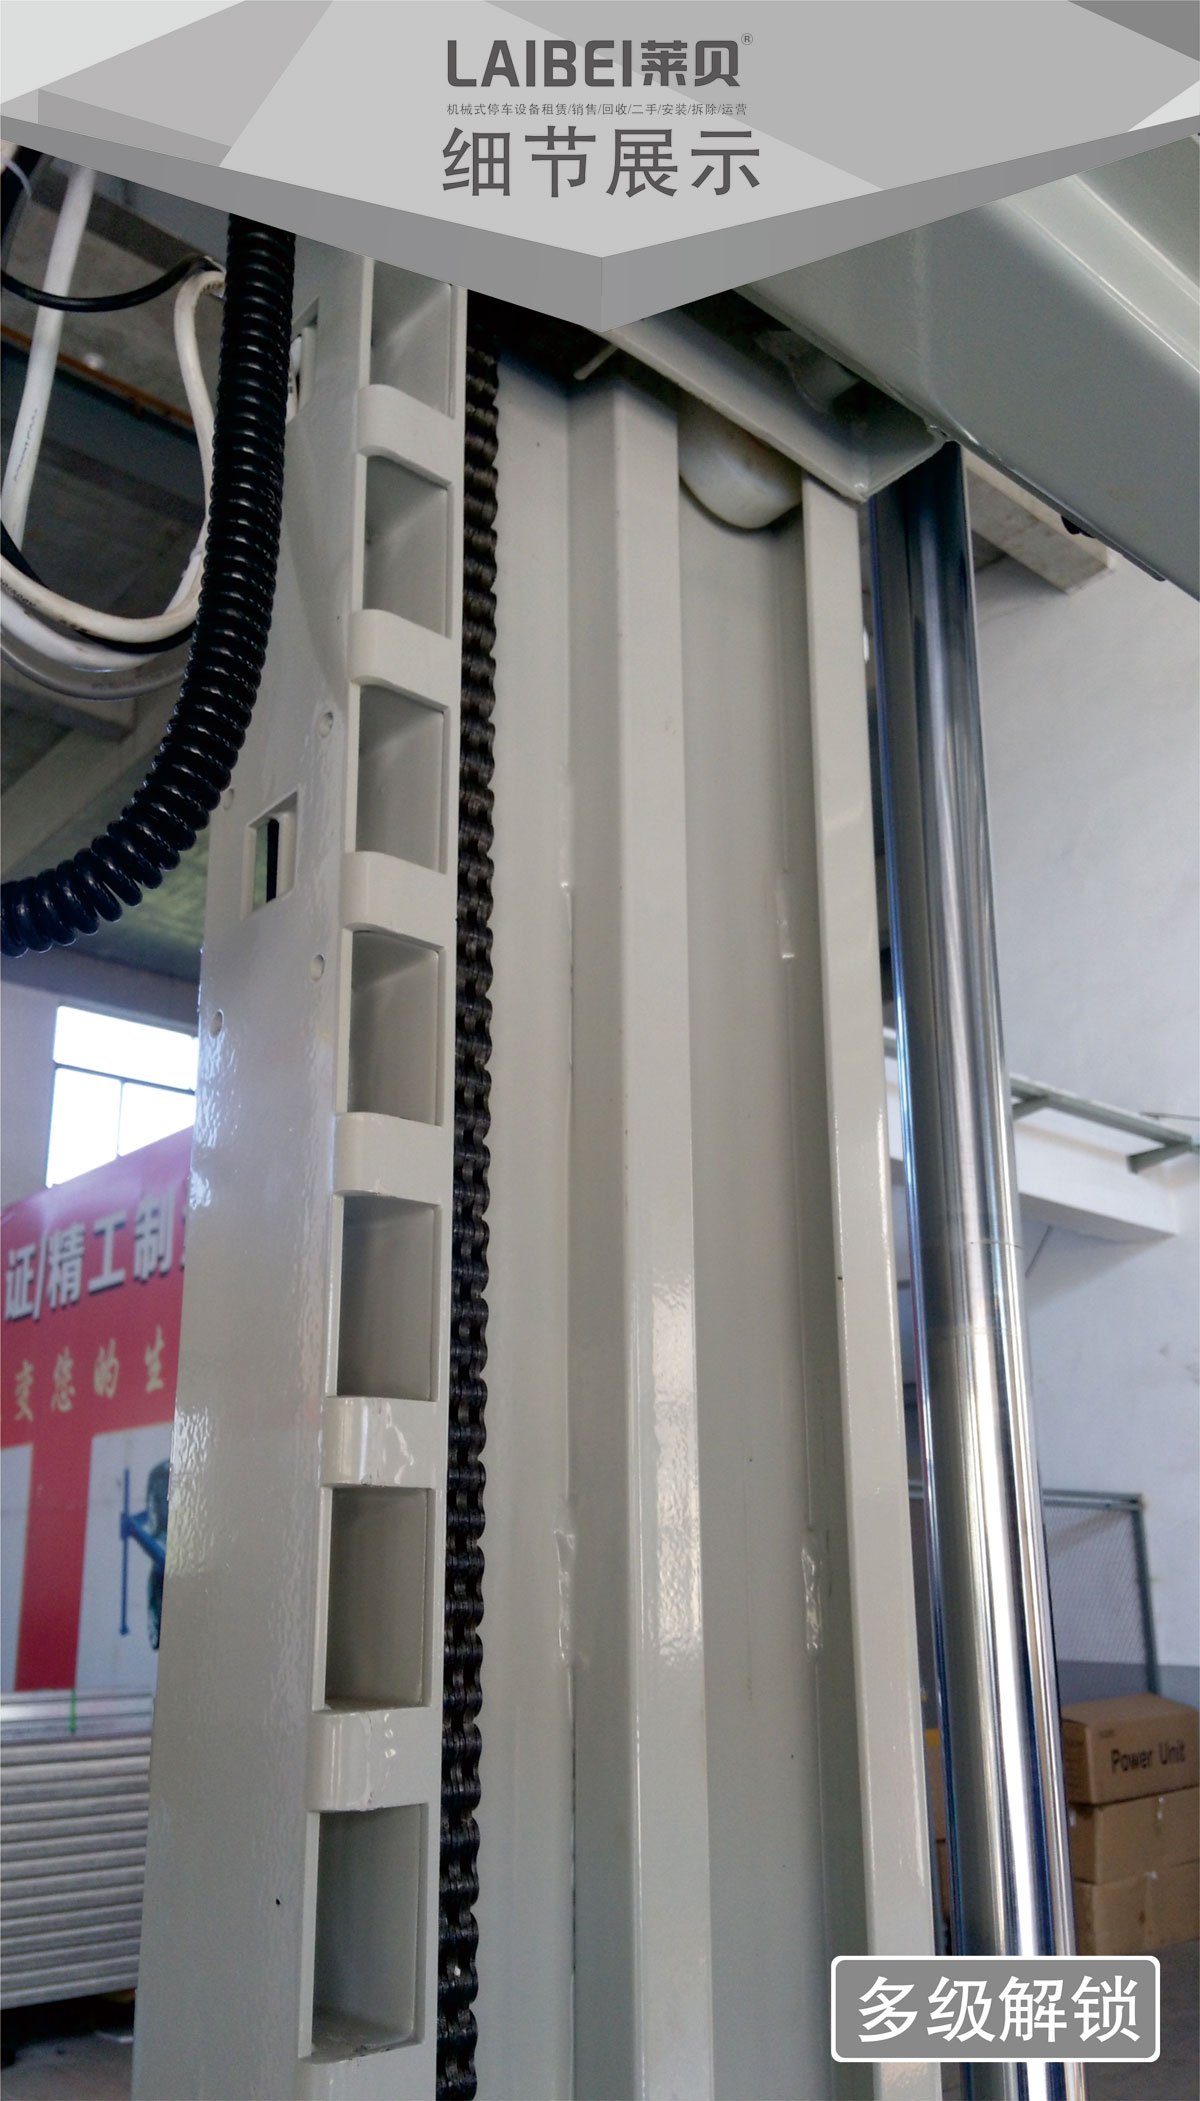 贵阳莱贝PJS两柱简易升降机械式立体停车库细节展示.jpg